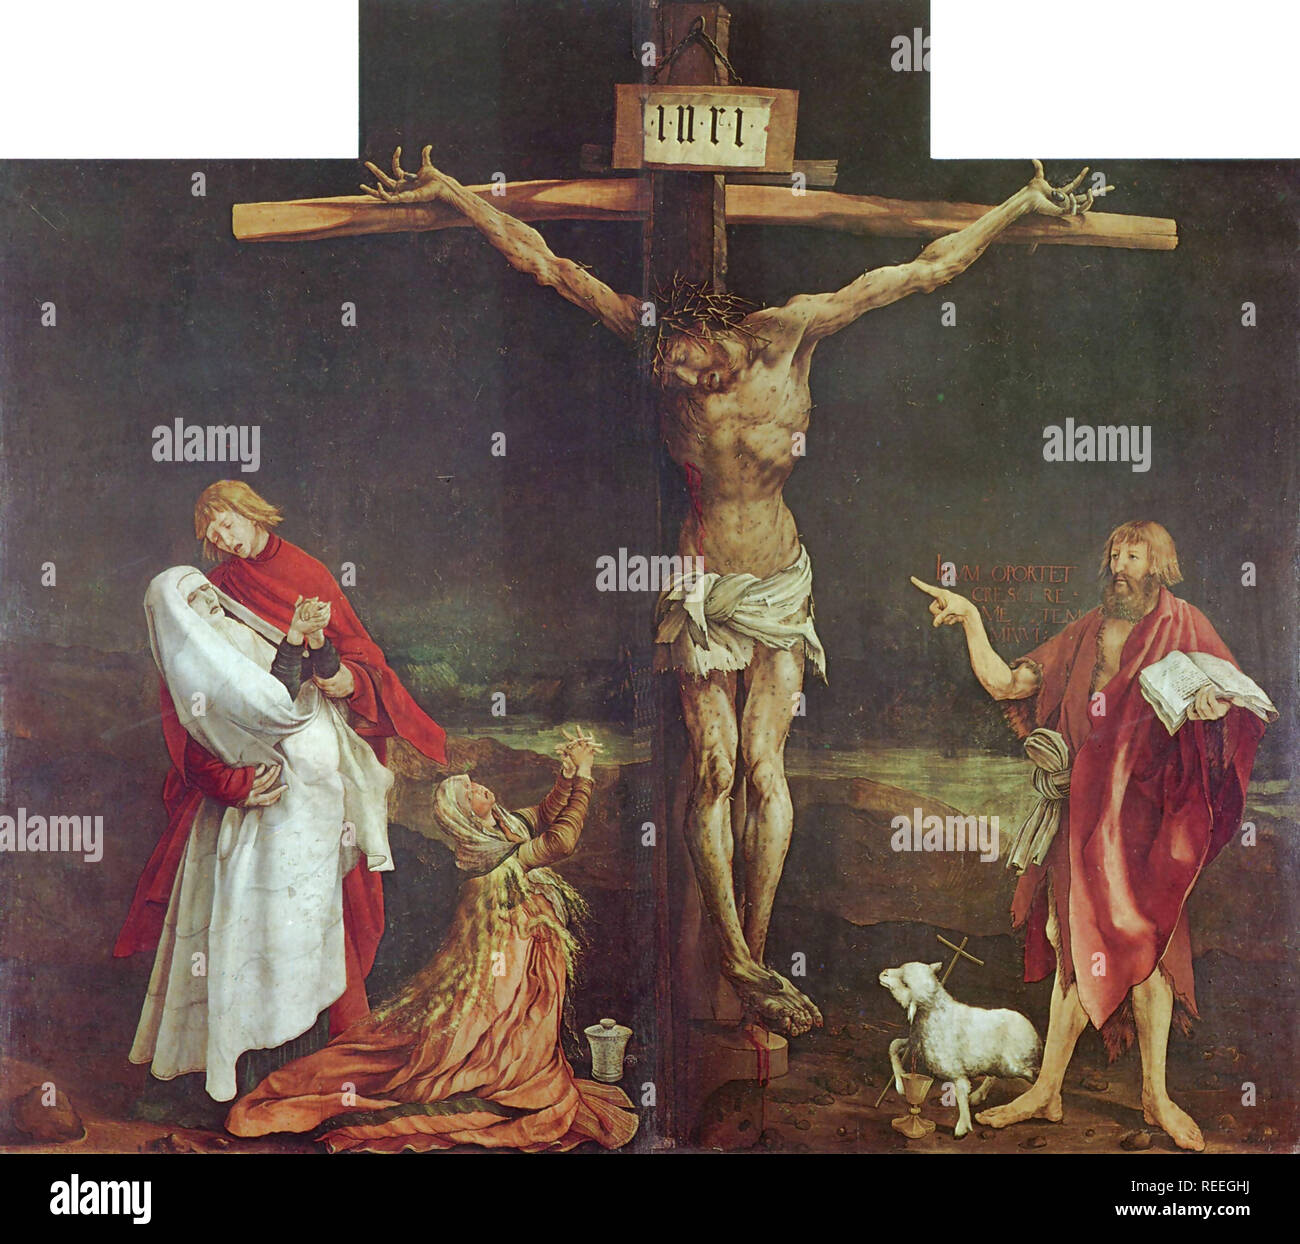 Kreuzigung aus dem Isenheimer Altar von Mathias Grünewald. Der Isenheimer Altar ist ein Altarbild modelliert und durch, bzw. gemalt, die Deutschen Nikolaus von Haguenau und Matthias Grünewald, 1512 - 1516. Stockfoto